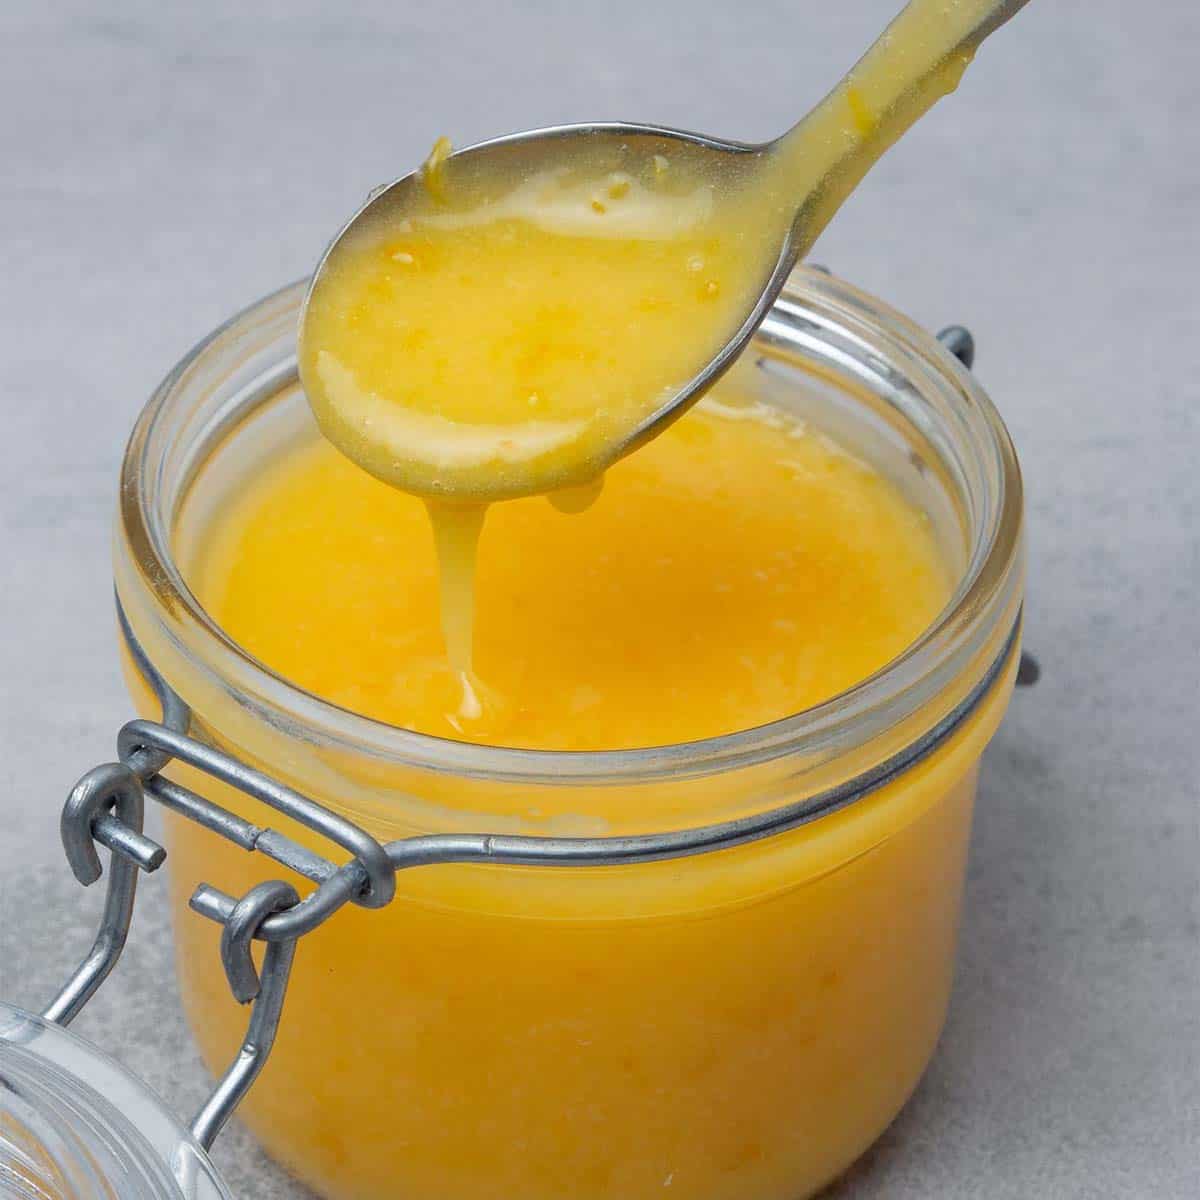 Lemon curd in a jar.